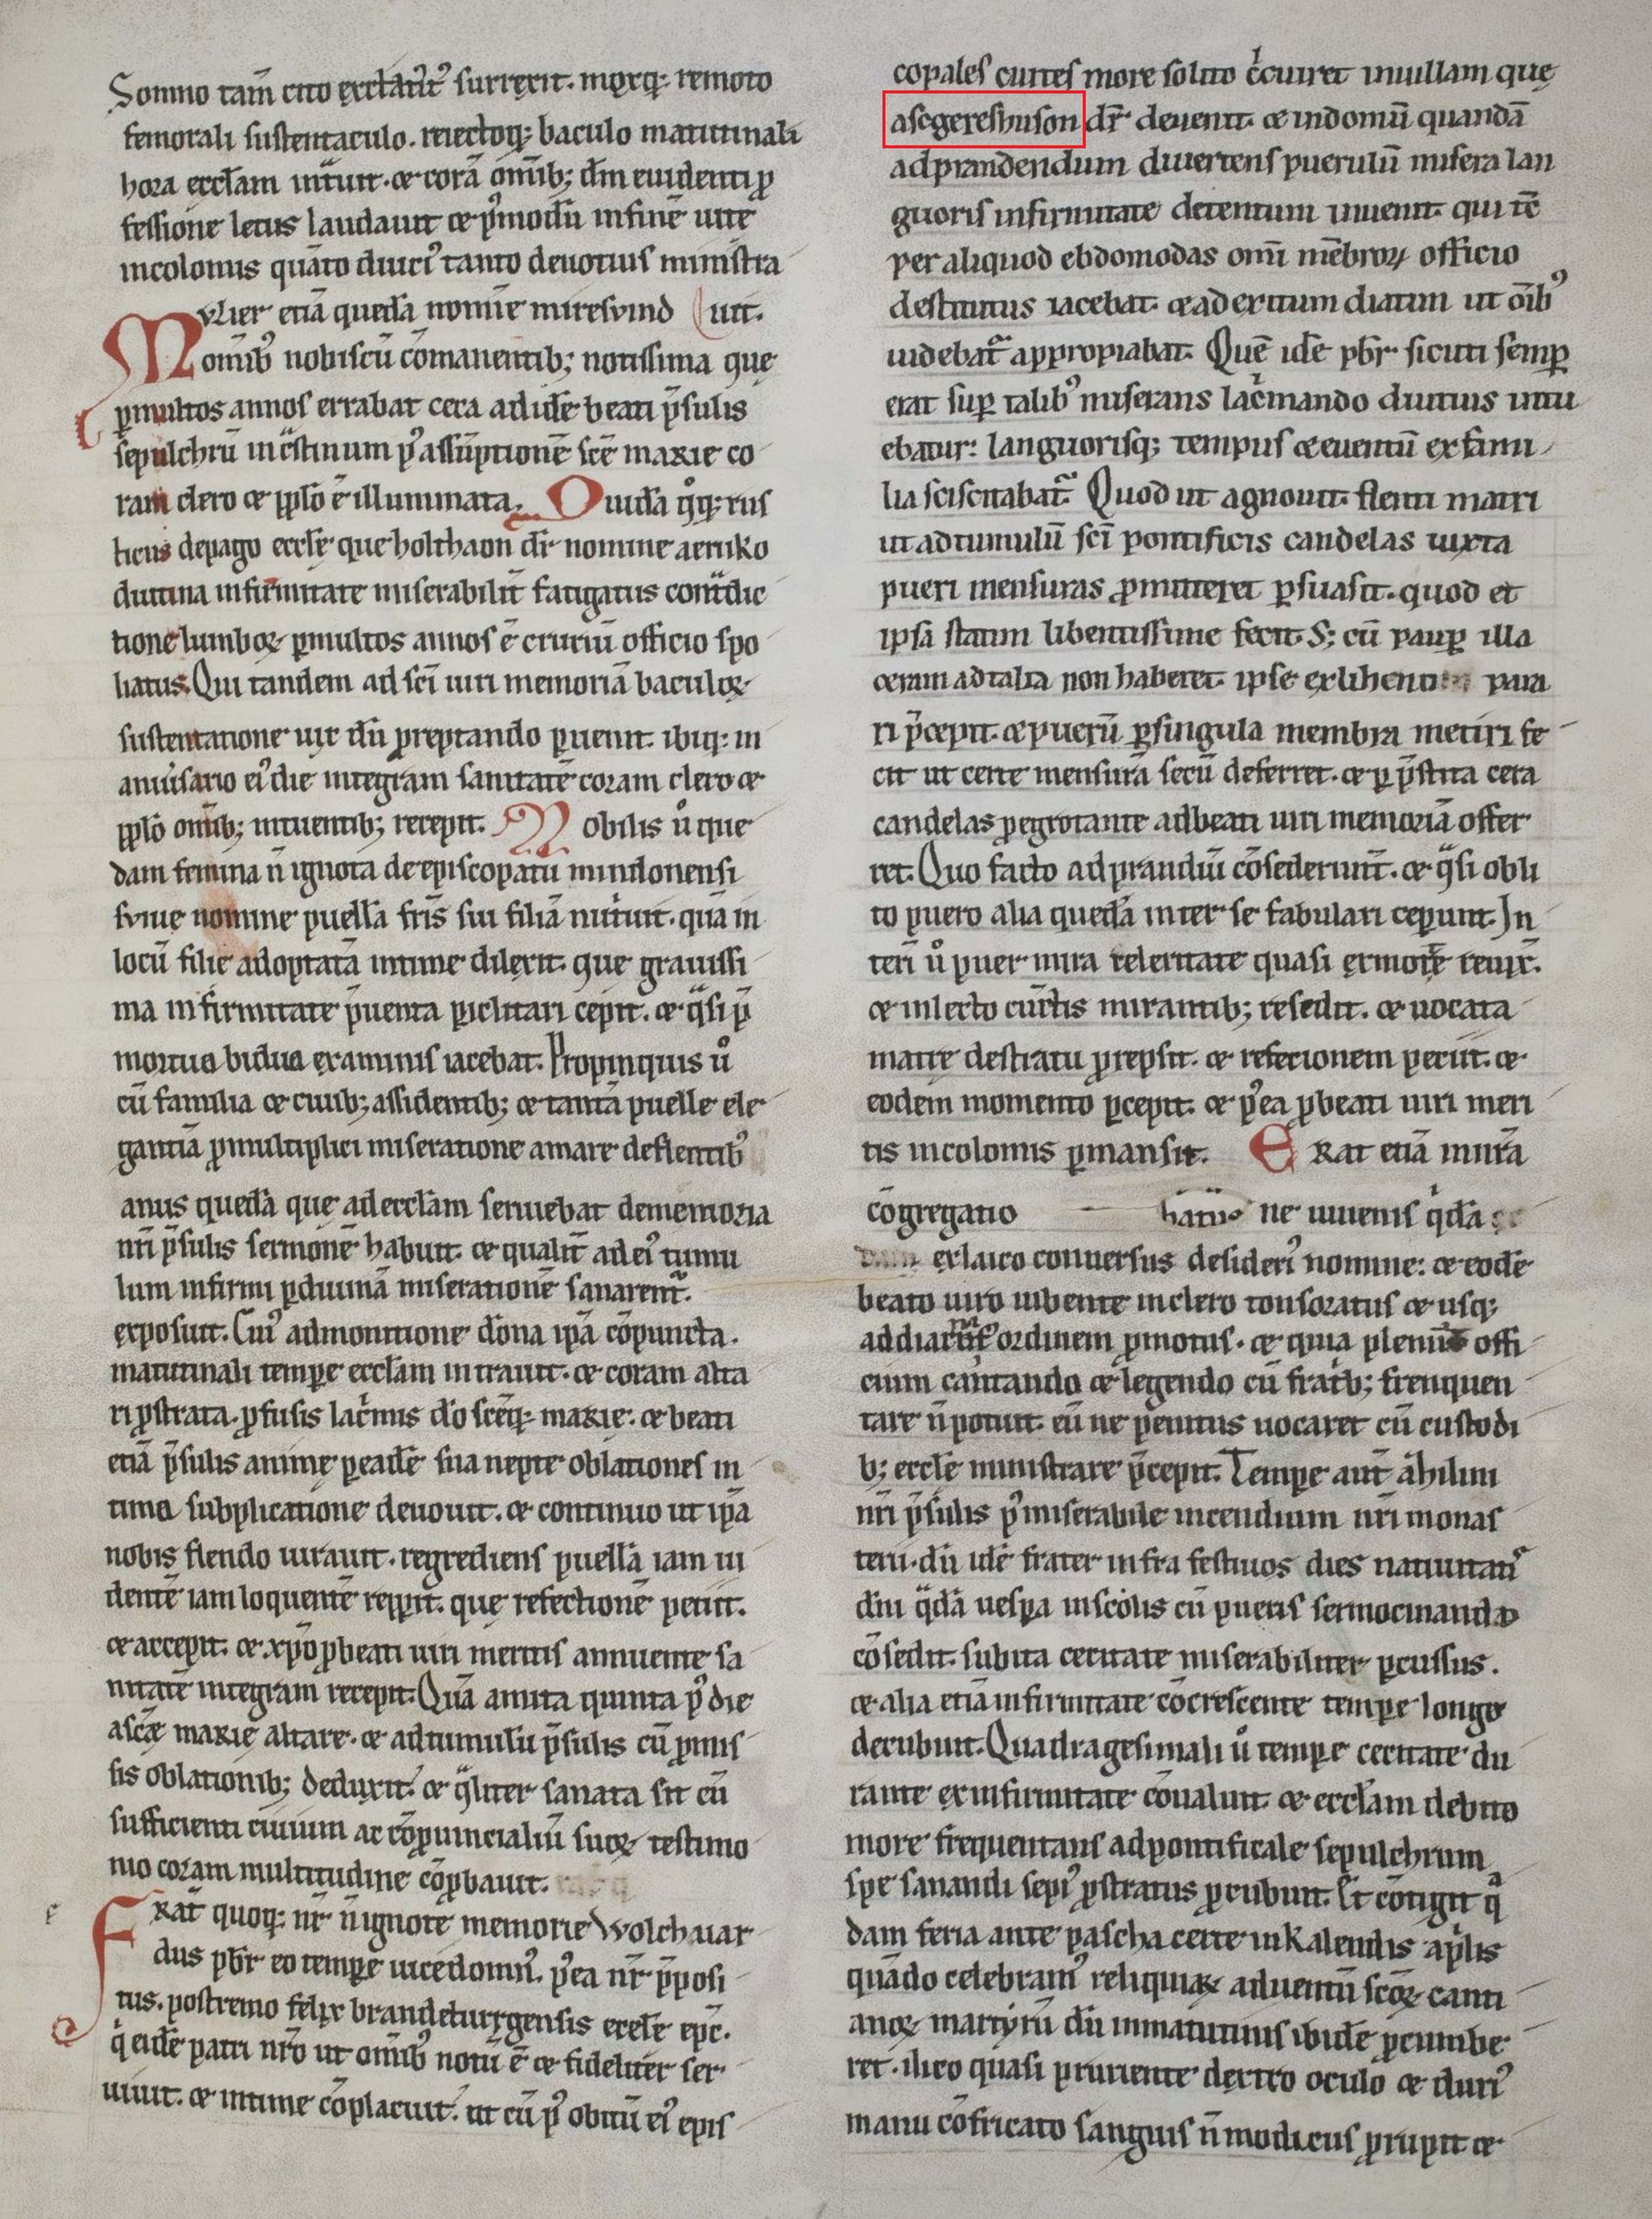 Kapitel 39 der Vita Godehardi posterior in einer Handschrift aus Zwettl, erstes Viertel des 13. Jahrhunderts